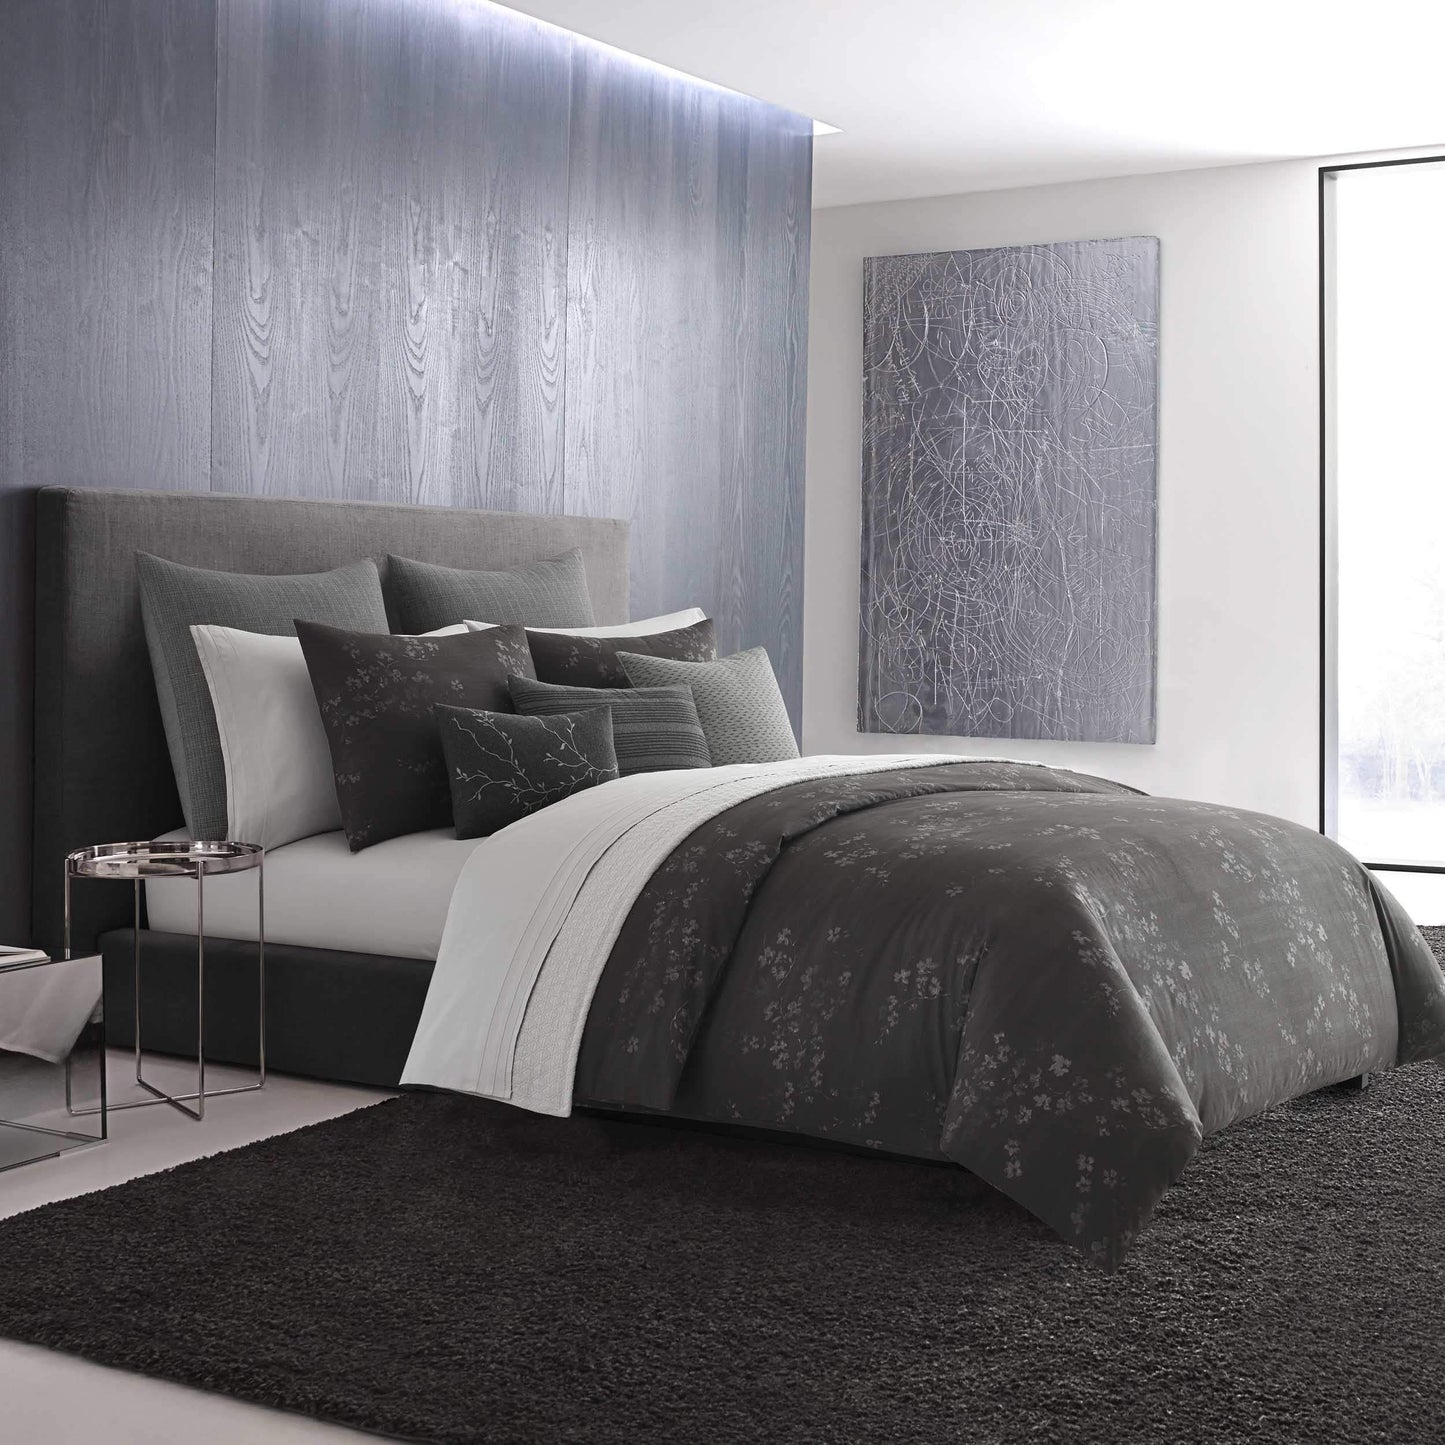 Vera Wang Comforter/Quilt/Duvet Queen / Black/Grey Comforter Set - 3 Pieces